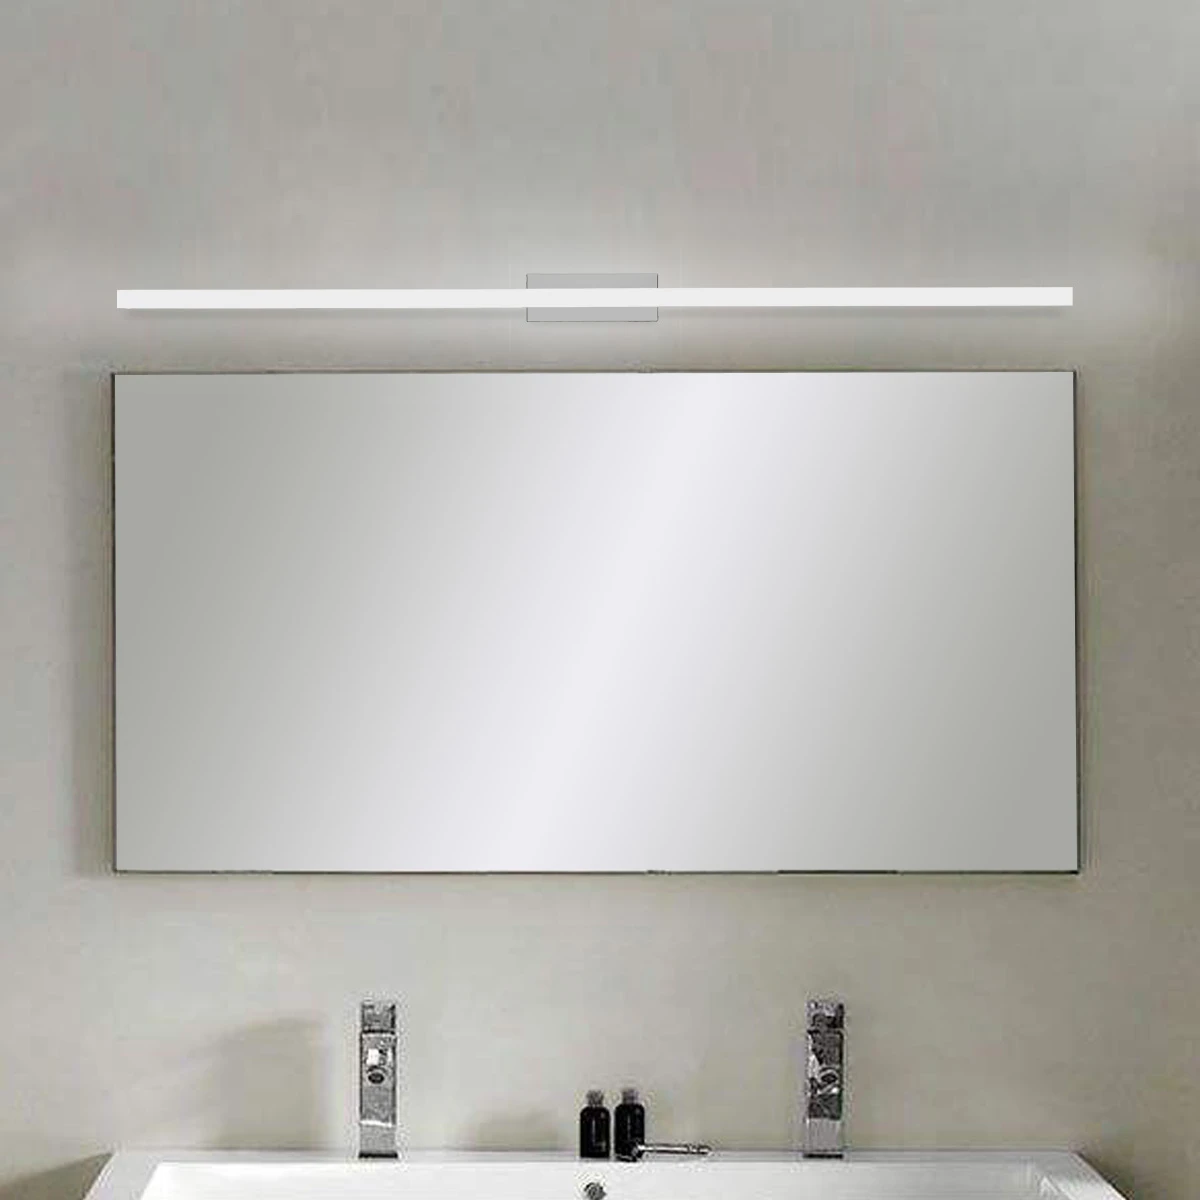 Moderno espejo LED lámpara de pared imagen lámpara frontal pared baño blanco cálido lámpara de pared